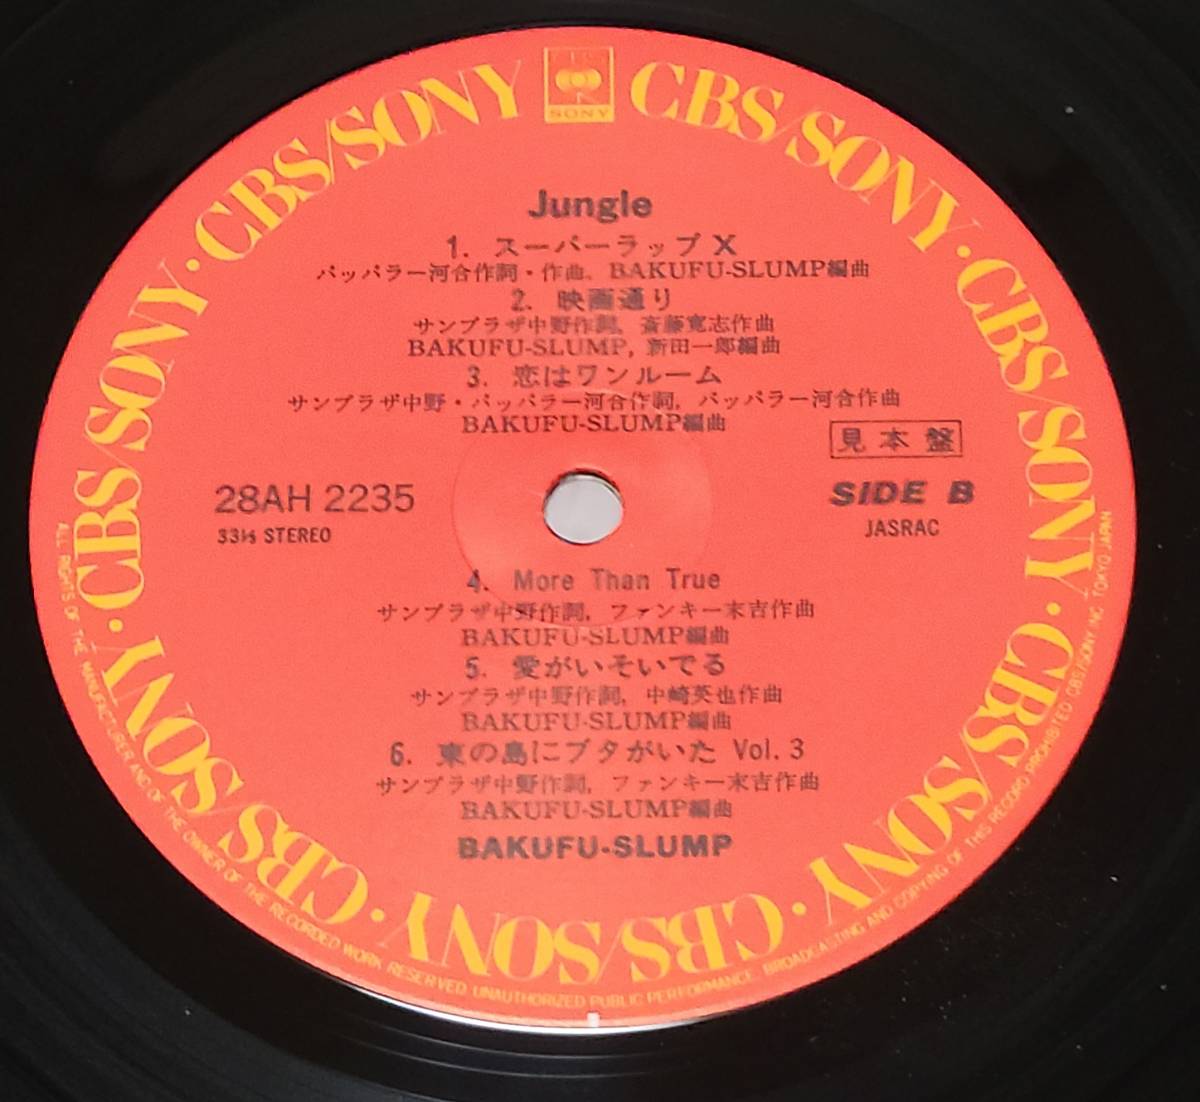  Bakufu Slump #5 pieces set # sample # ultimate beautiful record # sun pra The middle .#BAKUFU SLUMP#CBS SONY